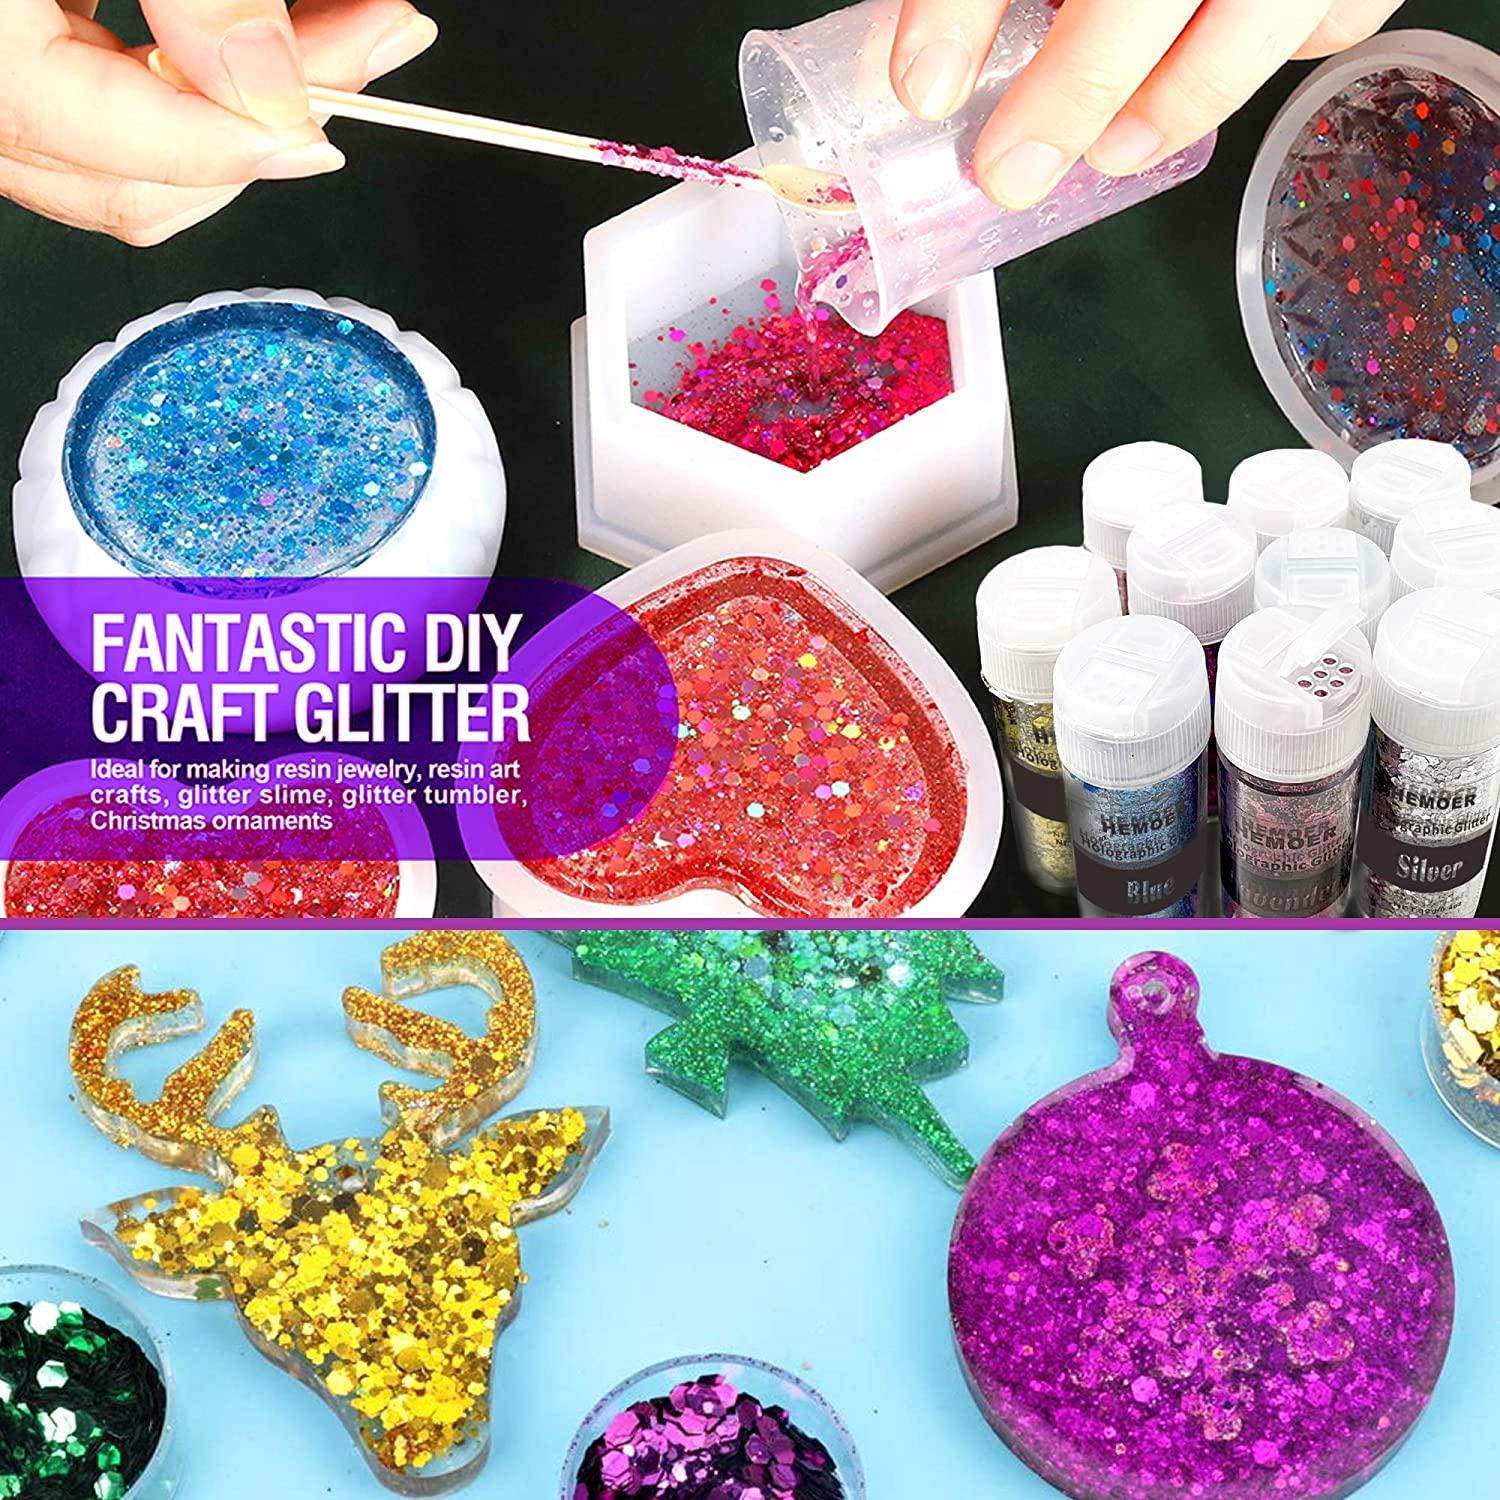 Glitter - 1 lb Pink Fine Glitter Shaker, Glitter for Resin, Glitter for Crafts, Extra Fine Glitter for Scrapbooking and Art and Craft Supplies